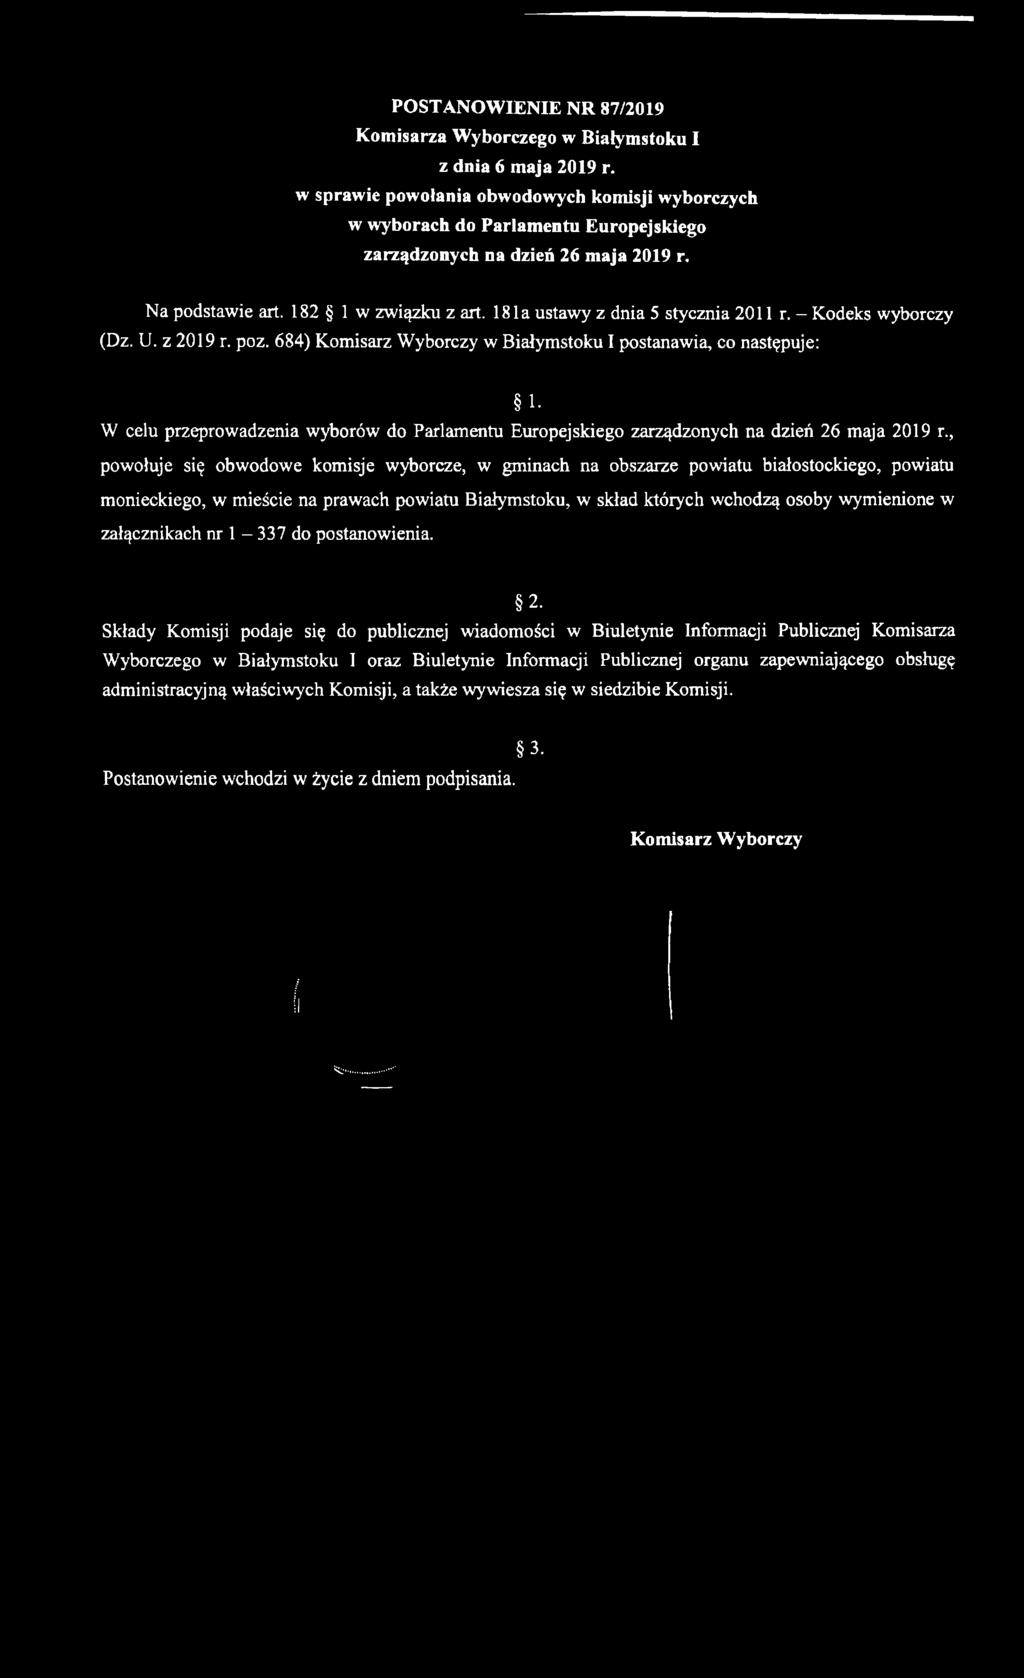 18la ustawy z dnia 5 stycznia 2011 r. - Kodeks wyborczy (Dz. U. z 2019 r. poz. 684) Komisarz Wyborczy w Białymstoku I postanawia, co następuje: 1.